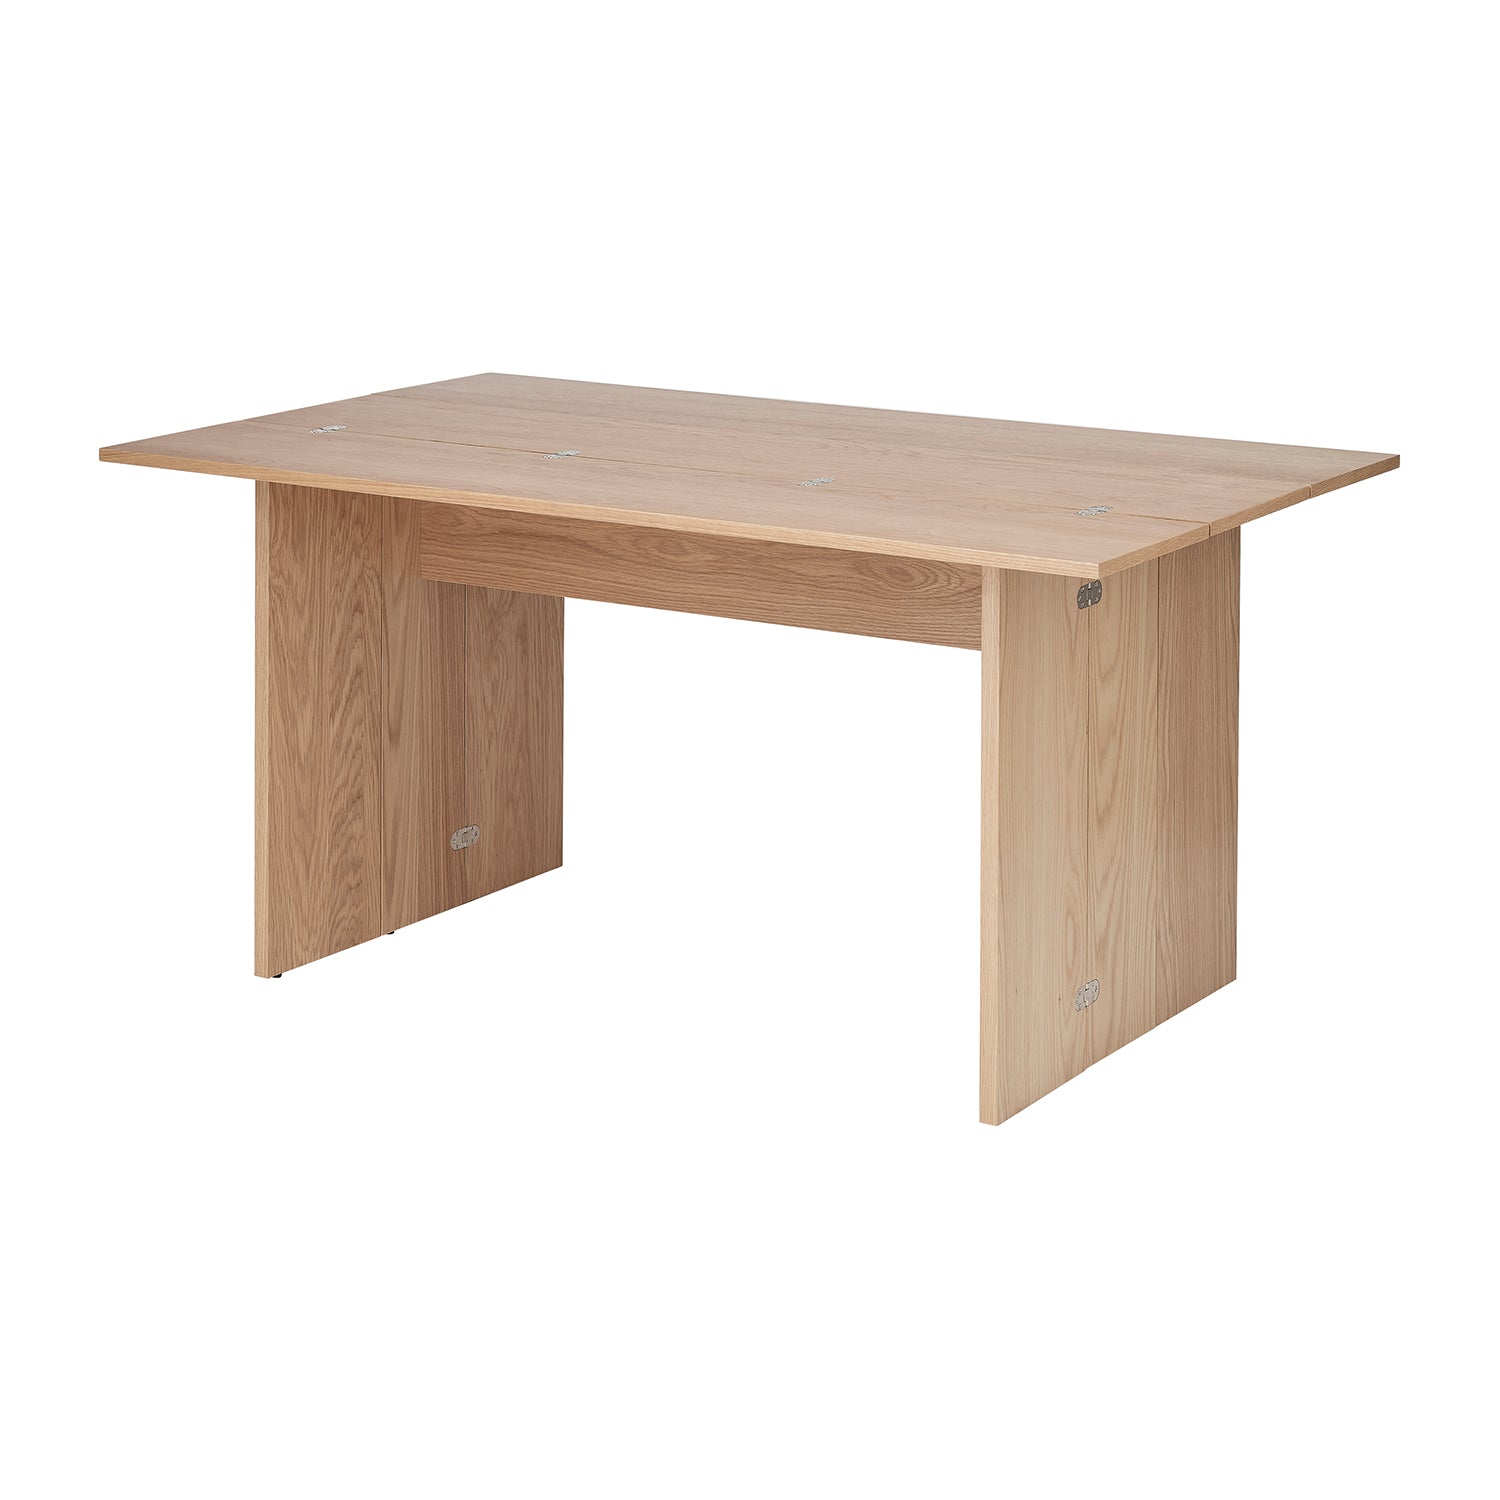 Flip Table - The Design Choice